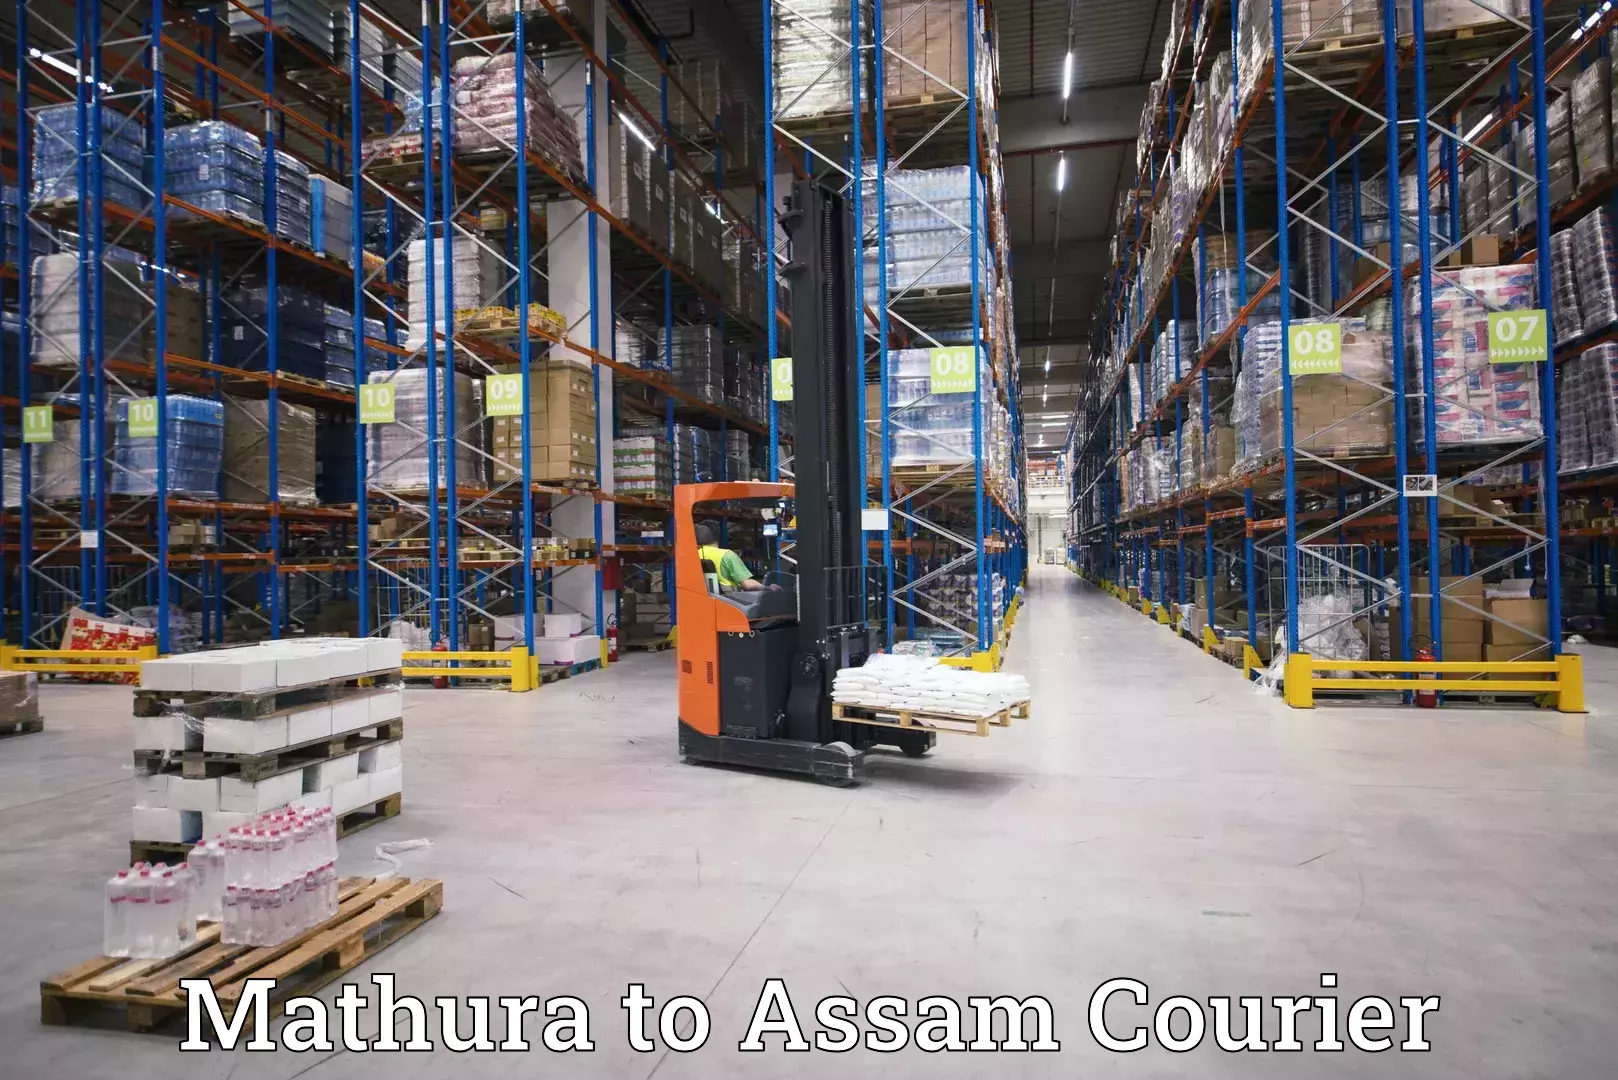 Express mail service Mathura to Assam